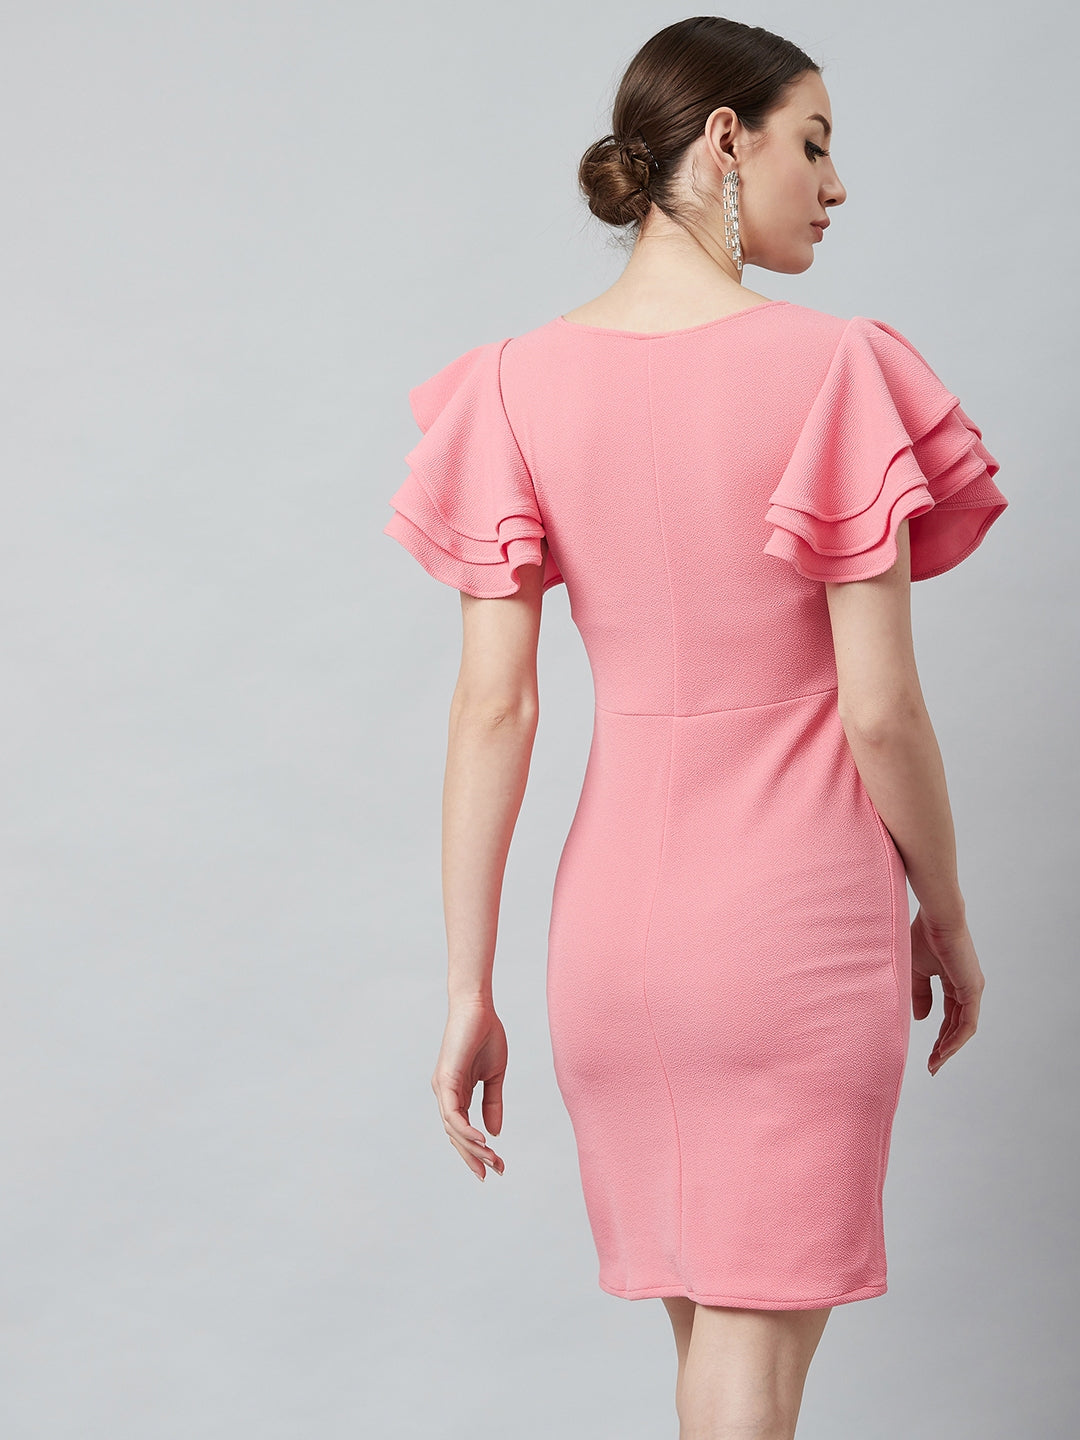 Athena Women Pink Solid Bodycon Dress - Athena Lifestyle